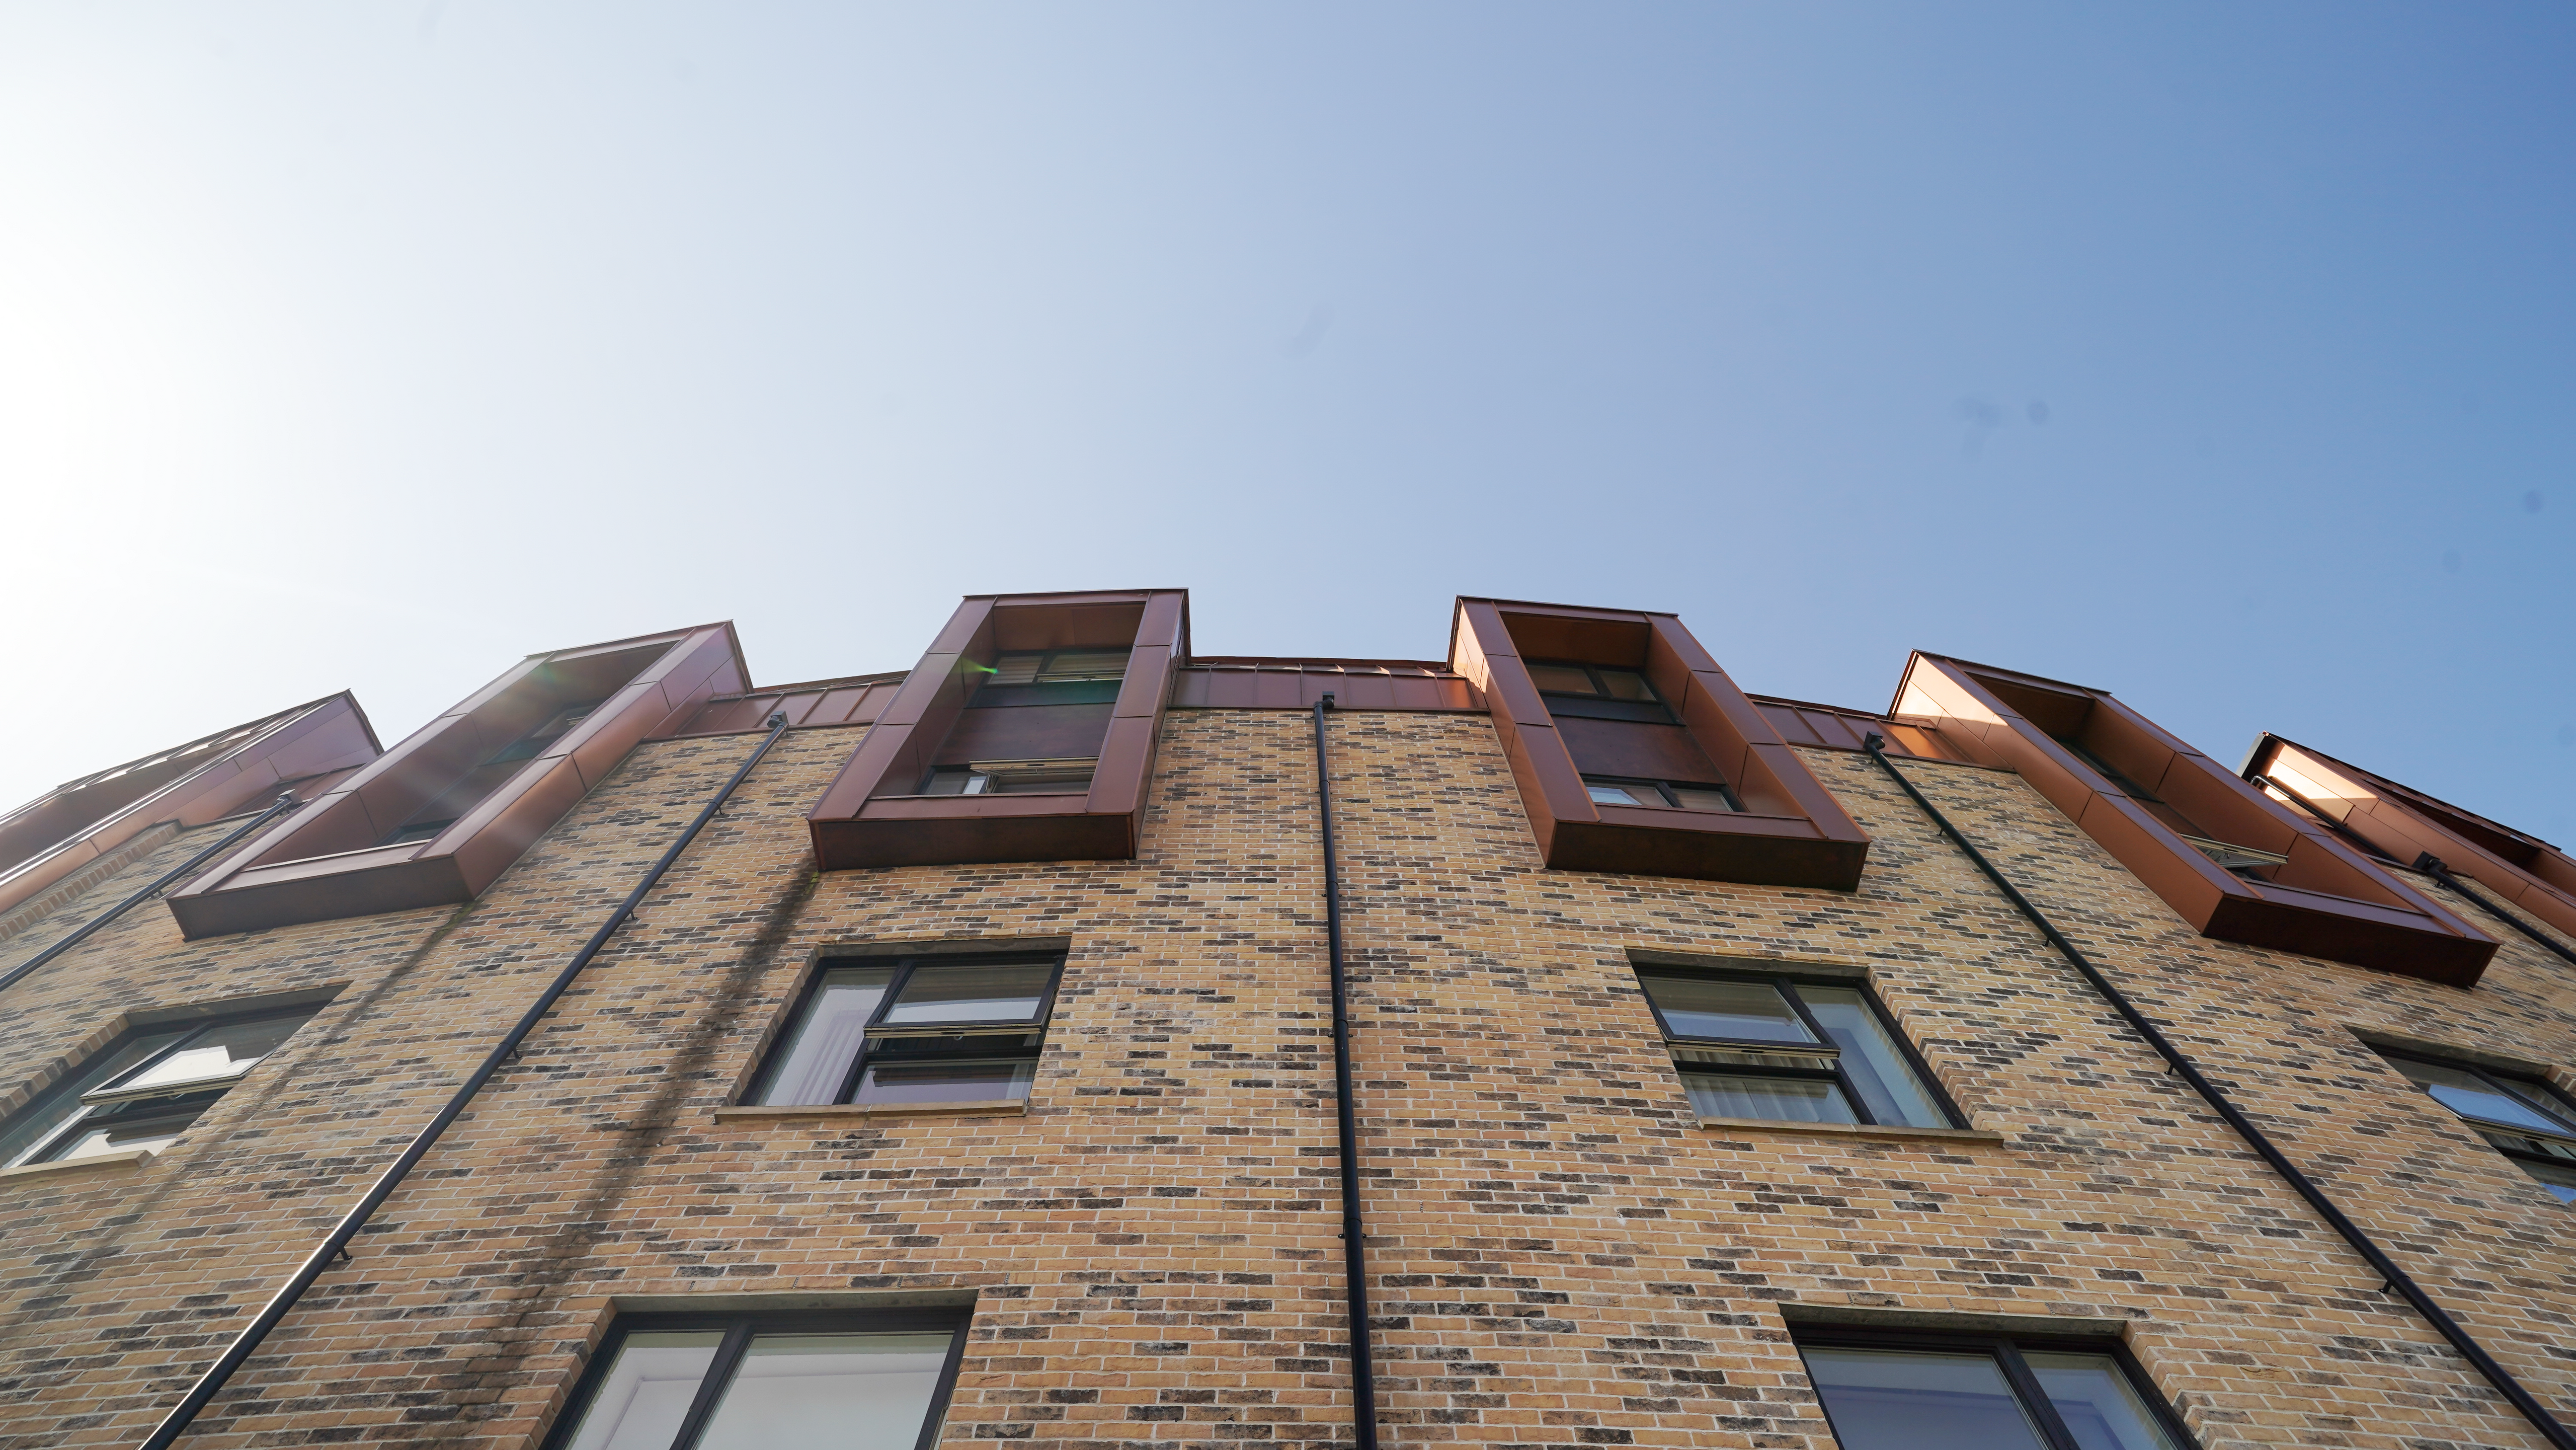 Aufwärtsblick auf die Fassade einer Wohnhausanlage in der Nethan Street in Glasgow, die sich durch die Verwendung von FALZONAL in Neukupfer auszeichnet, einem langlebigen und robusten PREFA Aluminiumprodukt. Die vertikale Ausrichtung der Fenster, die mit dem kupferfarbenen Aluminium umrahmt wurden, unterbricht die horizontale Gliederung der Ziegelmauer und verleiht dem Gebäude eine dynamische und moderne Ausstrahlung. Die Qualität und Farbgebung des FALZONAL fügt sich nahtlos in die städtische Architektur ein und bietet gleichzeitig eine beständige und ästhetische Lösung für moderne Wohnkomplexe. Zwischen den Fenstern sind schwarze Ablaufrohre zur Dachentwässerung platziert worden, die in dieser Perspektive die Rundung des Bauwerks verdeutlichen.